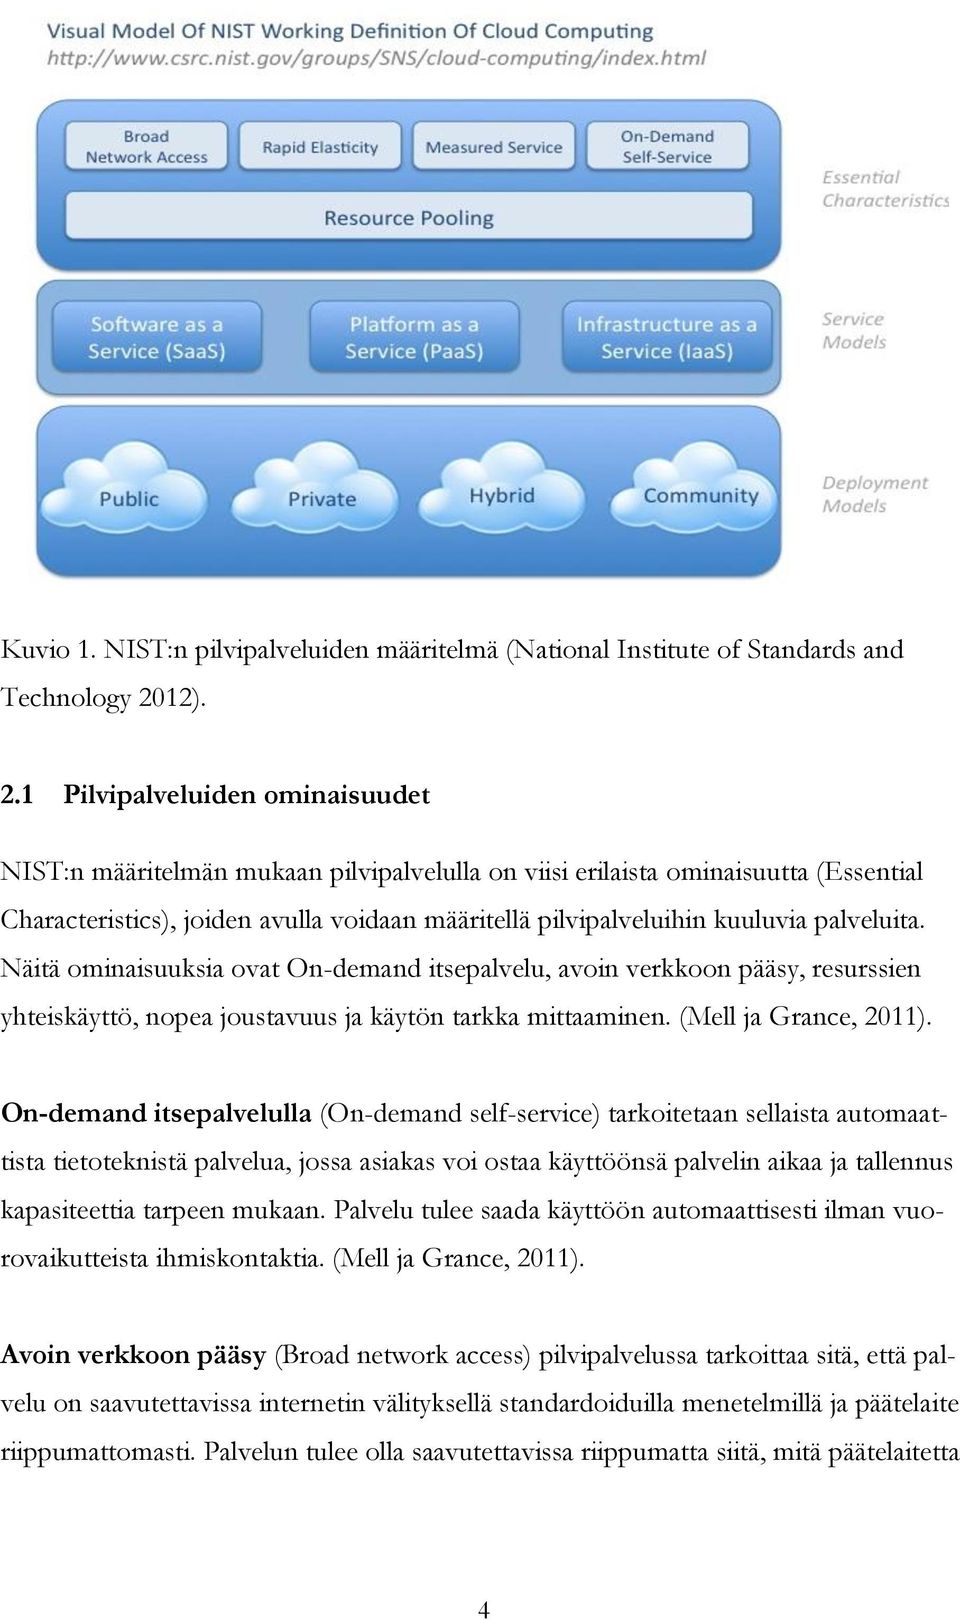 1 Pilvipalveluiden ominaisuudet NIST:n määritelmän mukaan pilvipalvelulla on viisi erilaista ominaisuutta (Essential Characteristics), joiden avulla voidaan määritellä pilvipalveluihin kuuluvia